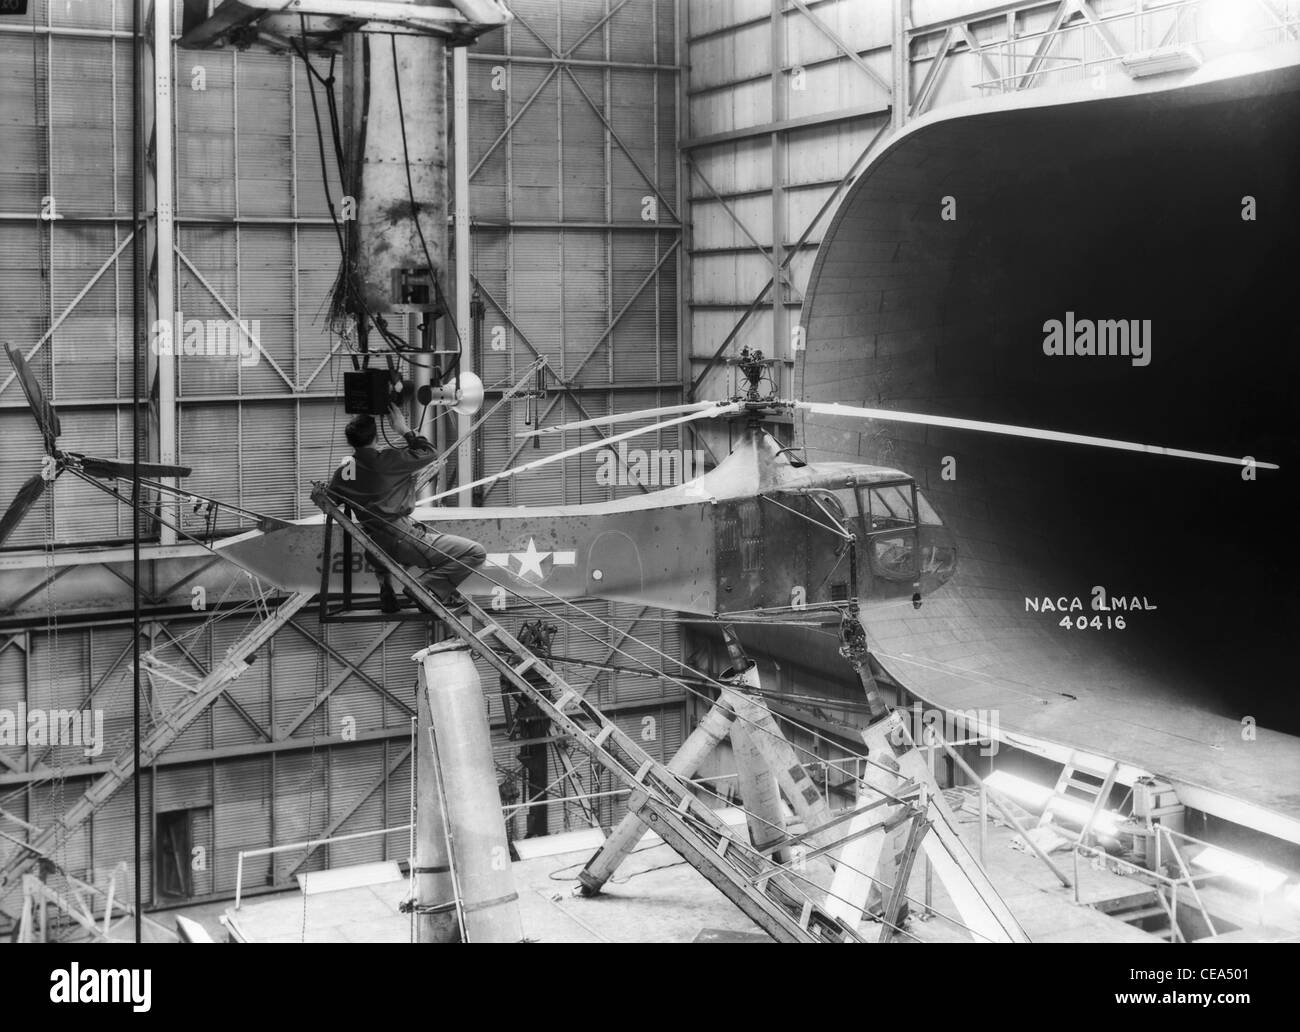 Sikorsky-Hubschrauber In dieser Aufnahme im Jahr 1944 einer der Langley Research Center Sikorsky YR-4 b/HNS-1 Hubschrauber ist in 30 x 60 Full Scale Tunnel zu sehen. Ein Techniker richtet ein Kamera-Ausrüstung für Stop-Aktion Rotorblatt Fotos. Sikorsky baute hunderte von r-4 Hubschrauber während des zweiten Weltkriegs. Es war der erste massenproduzierte Hubschrauber. Bild-Gutschrift: NASA Stockfoto